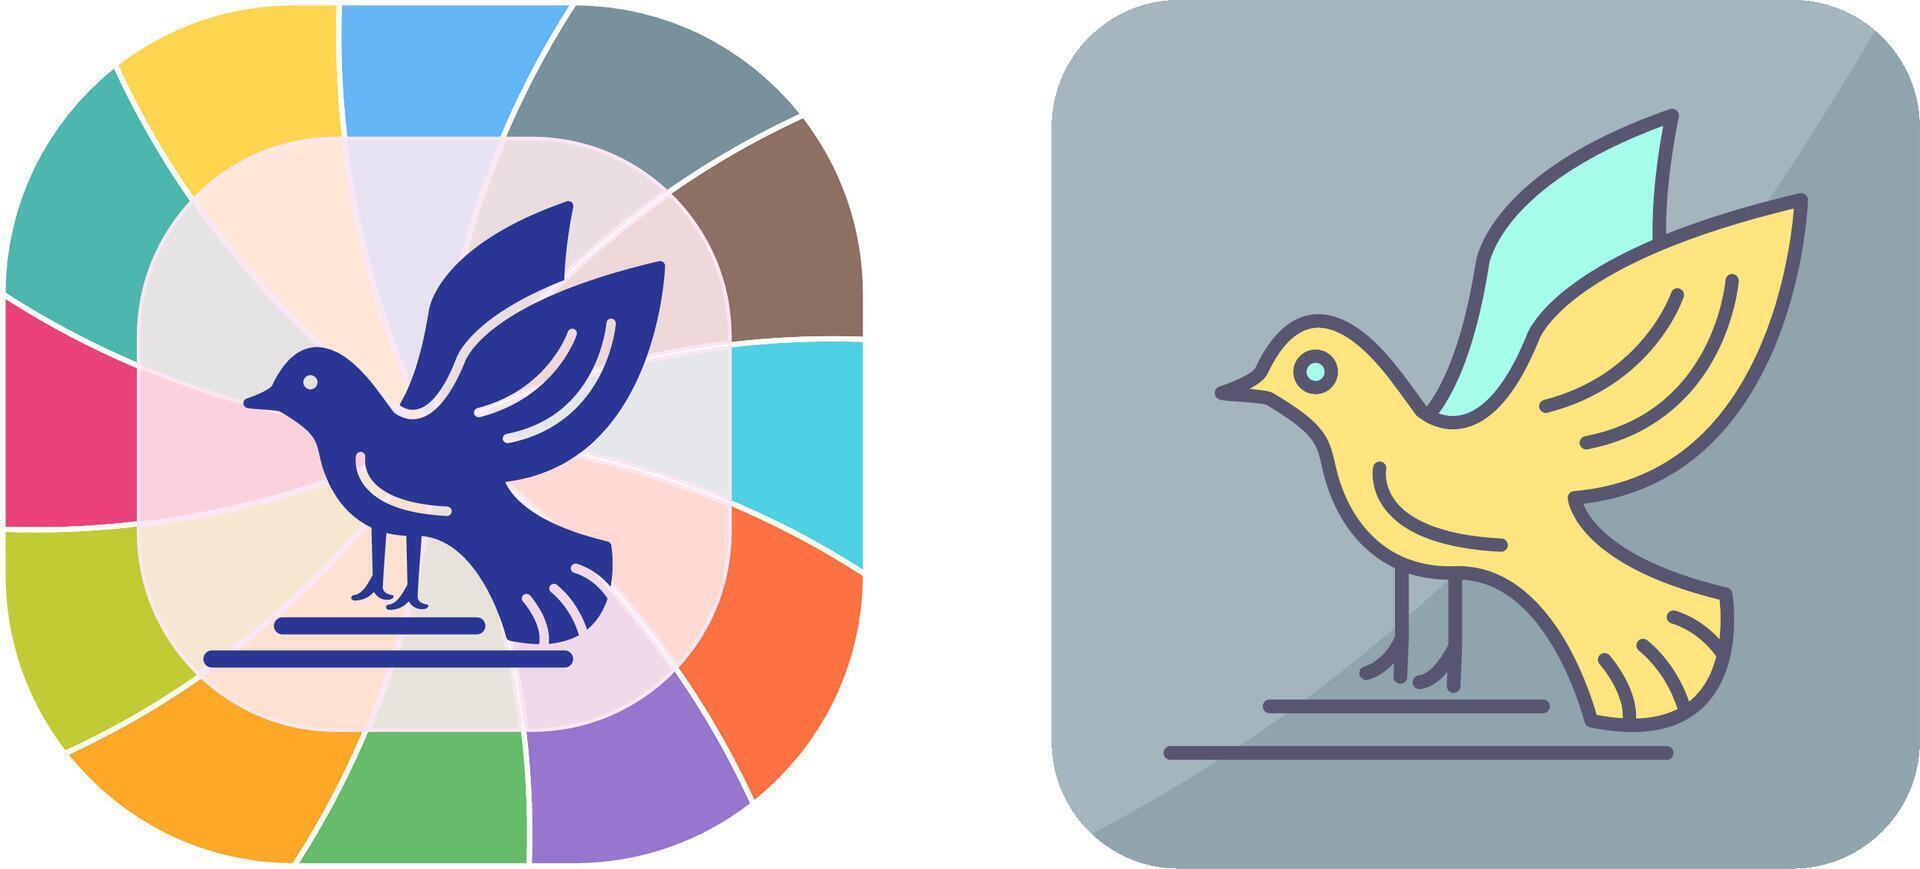 vogel pictogram ontwerp vector